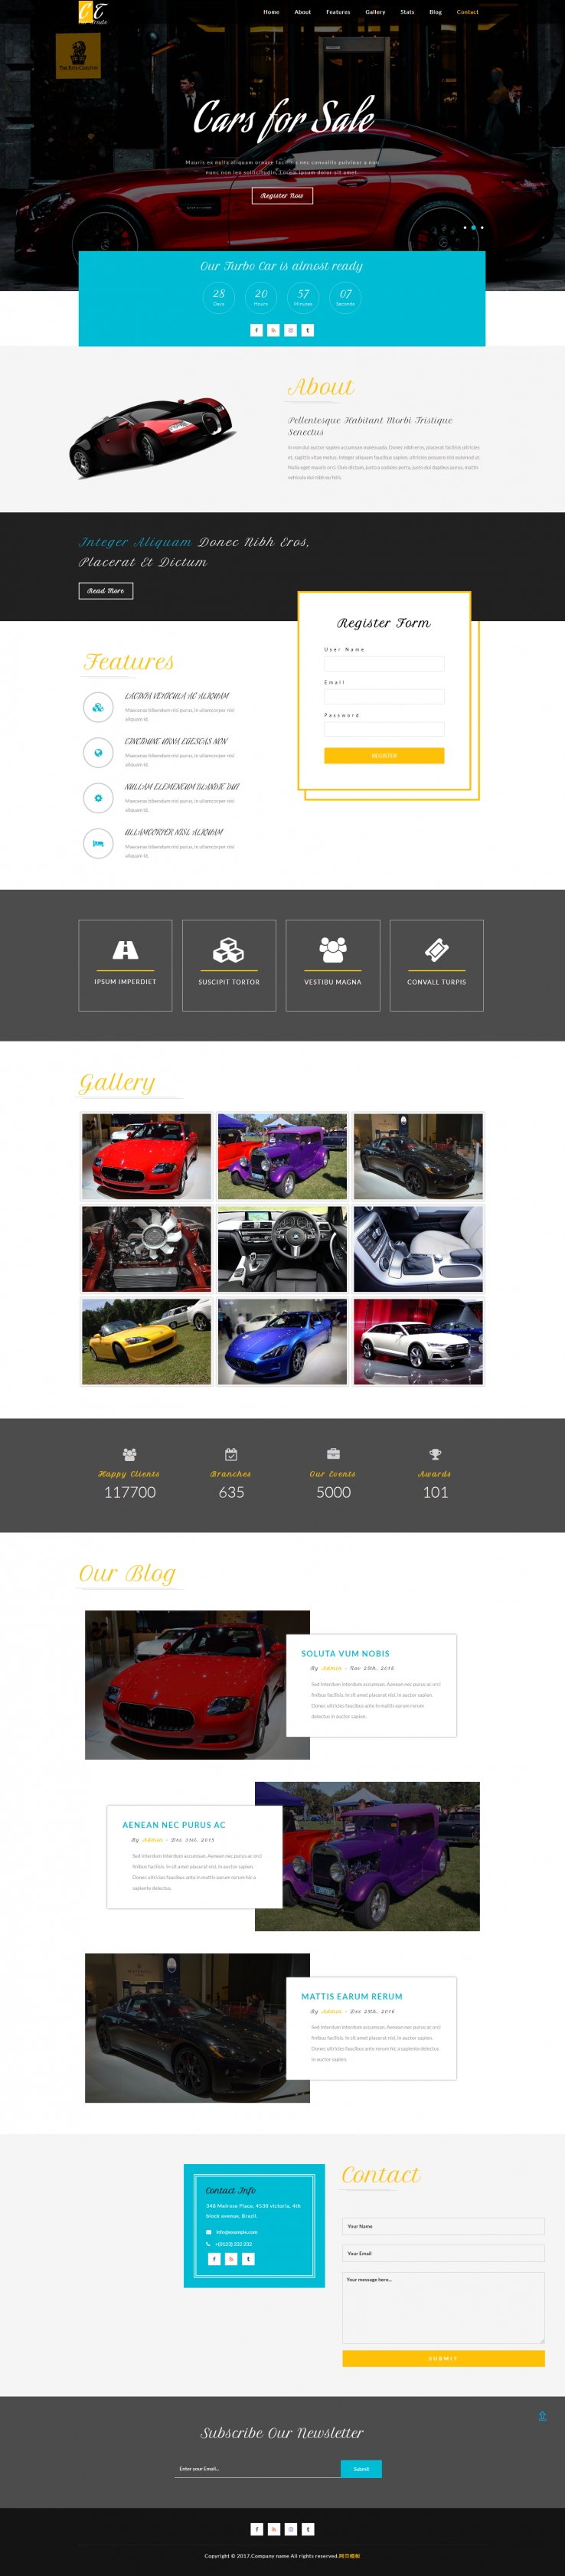 黑色大气风格的汽车车展网站模板下载